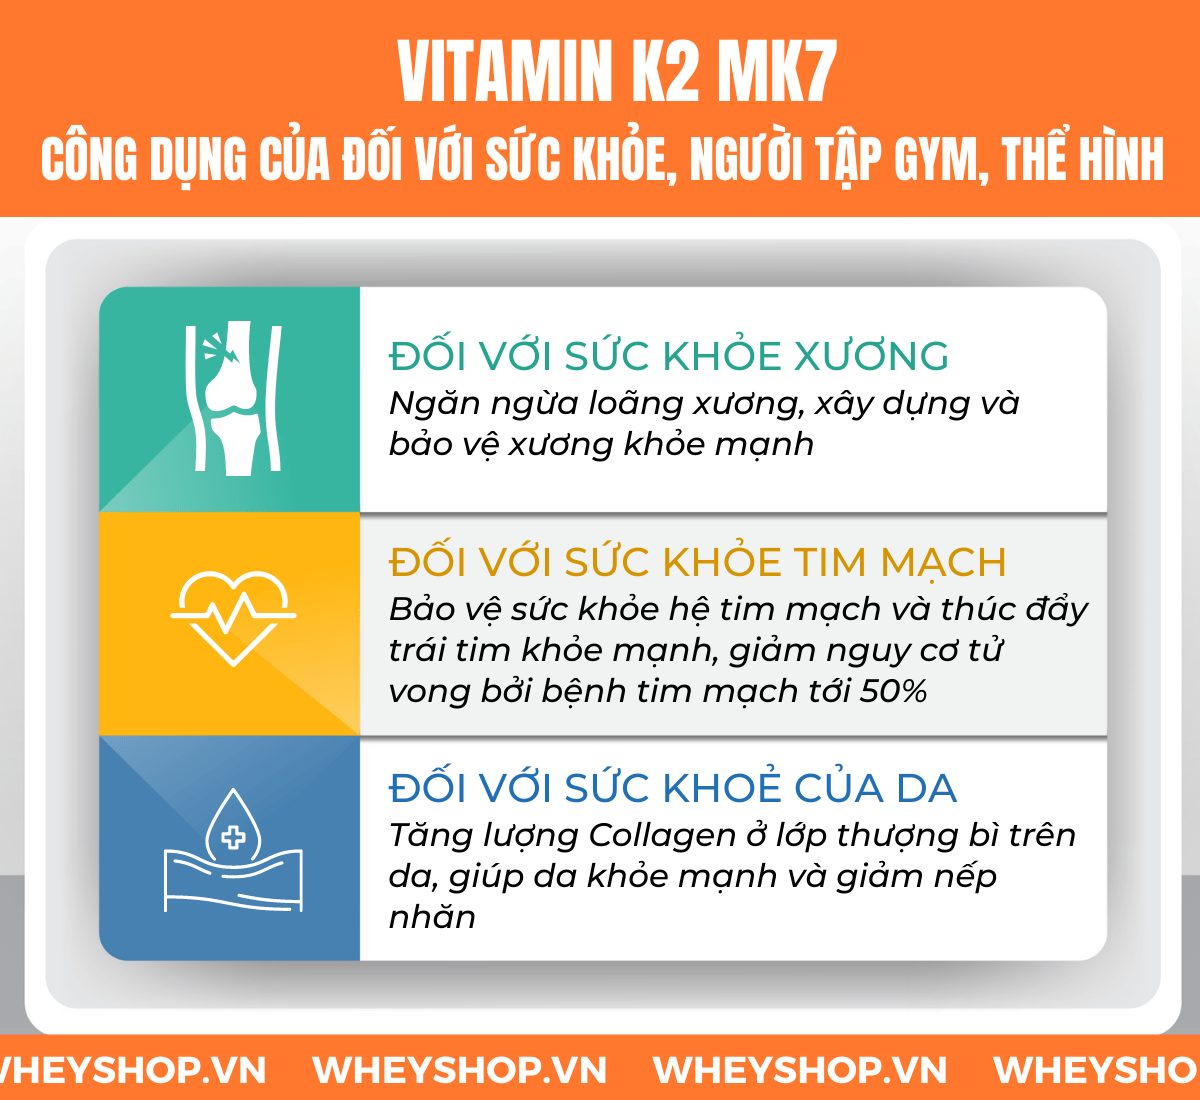 Tìm hiểu khái niệm Vitamin K2 Mk7 là gì , công dụng và lợi ích của Vitamin K2 Mk7 đối với sức khỏe và vai trò với người tập gym, tập thể hình